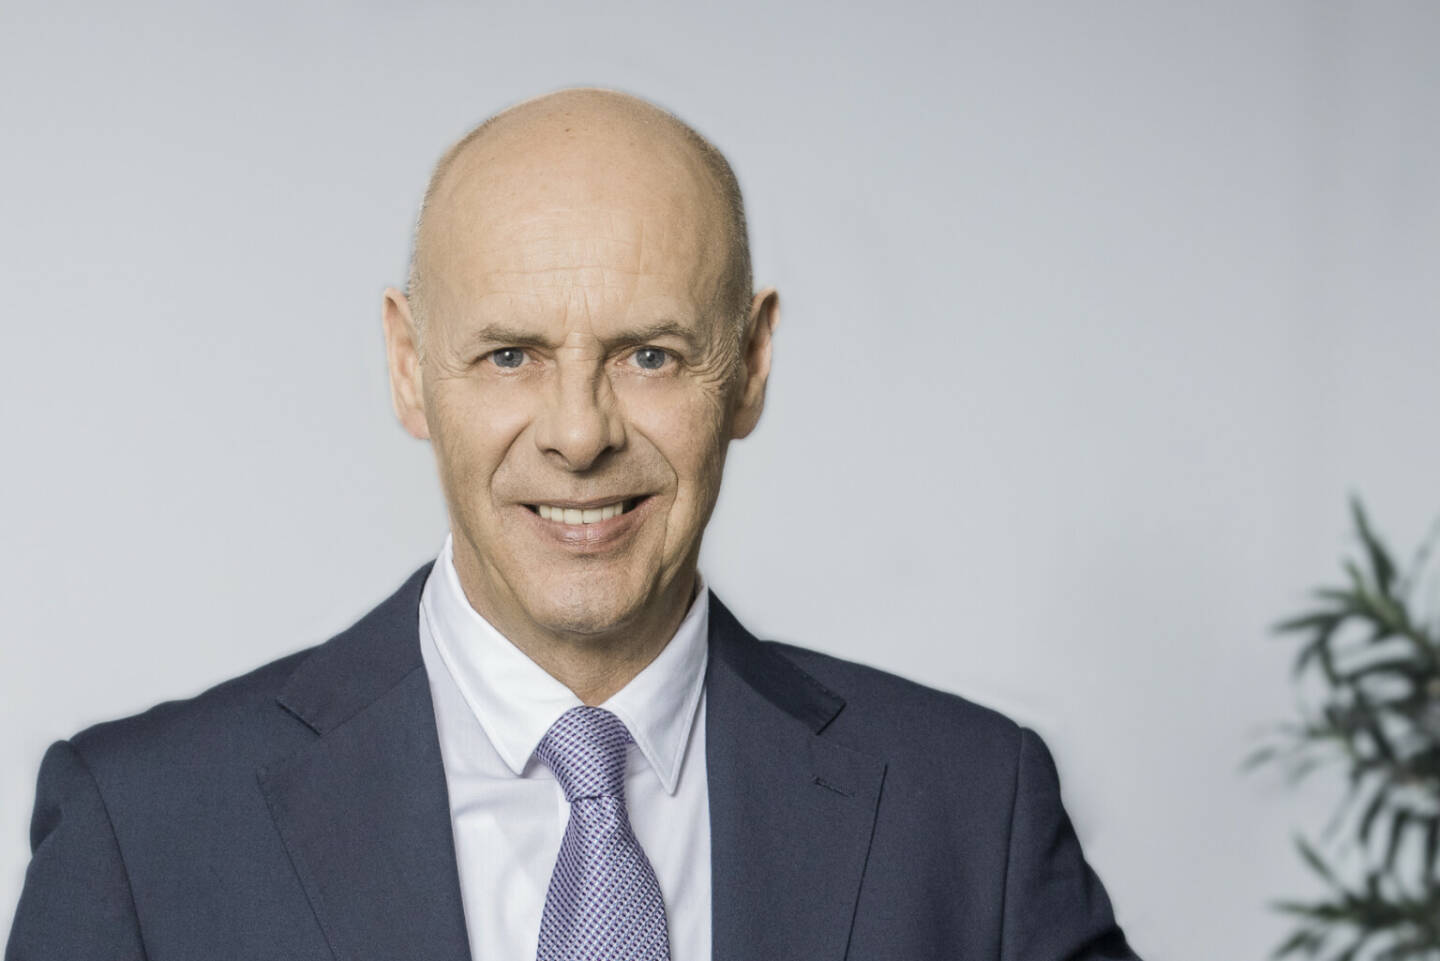 Juerg Sturzenegger, CEO von Fisch Asset Management, Credit: Fisch AM